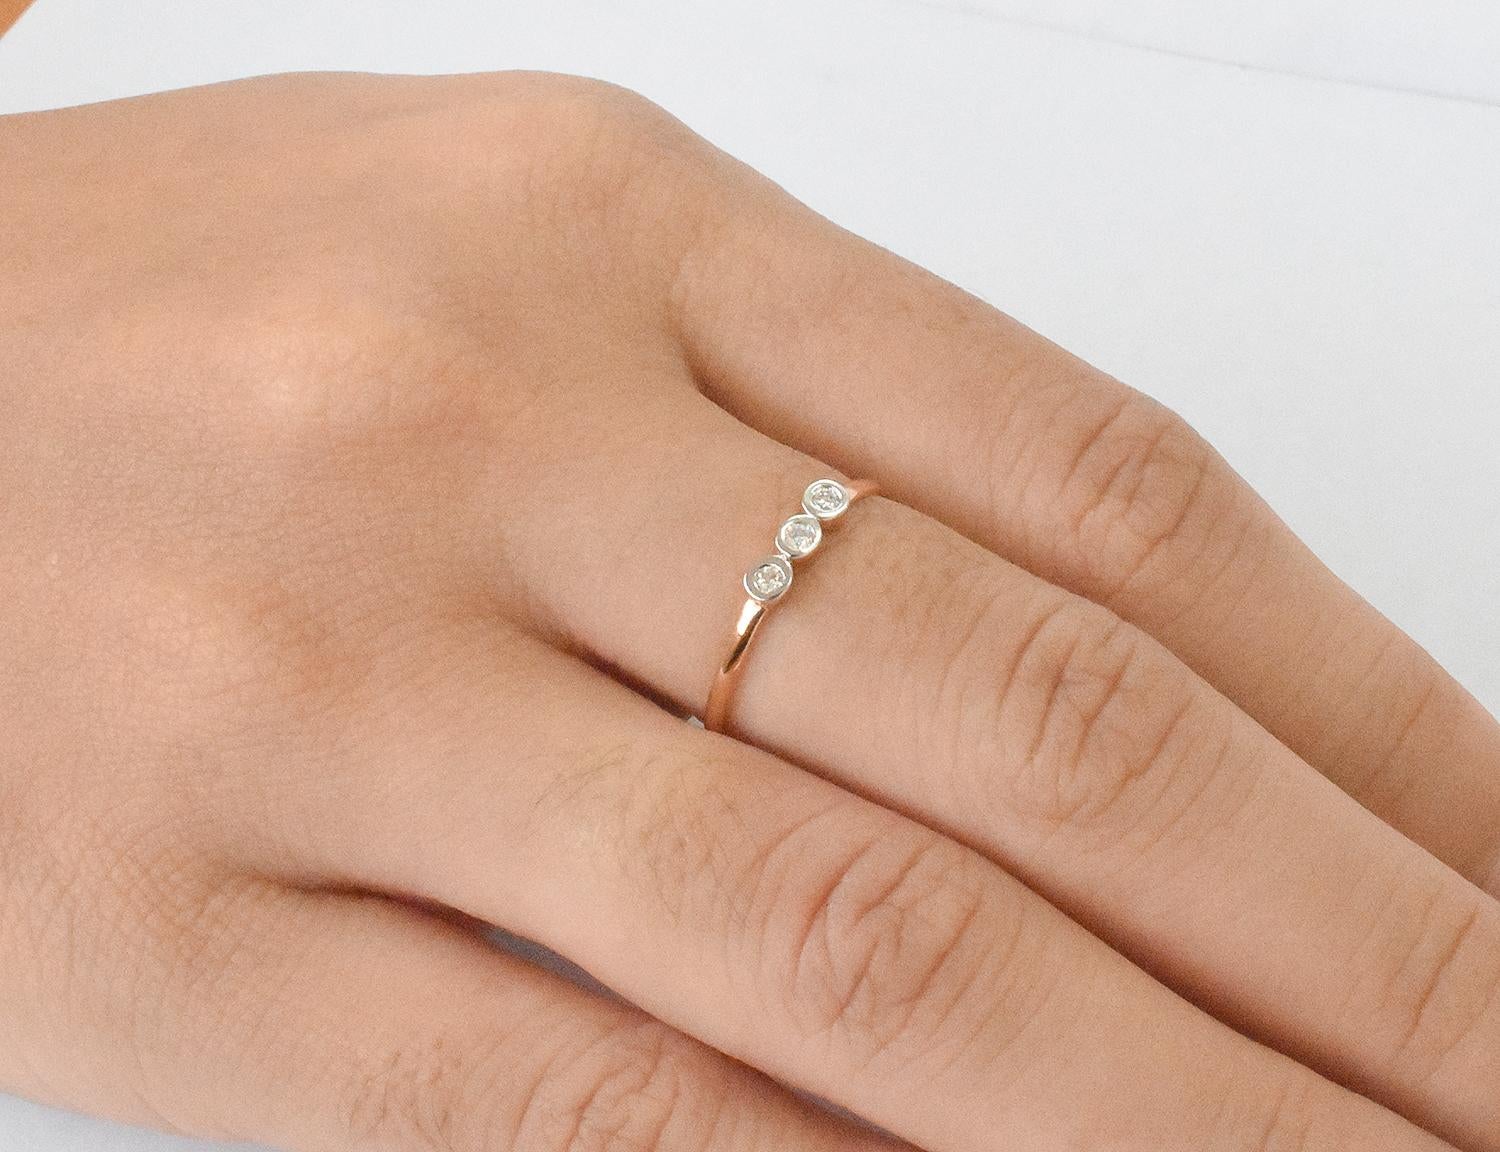 For Sale:  18k Gold Diamond 1.9 mm Ring Bezel Setting Three Diamond Ring Trio Diamond Ring 8